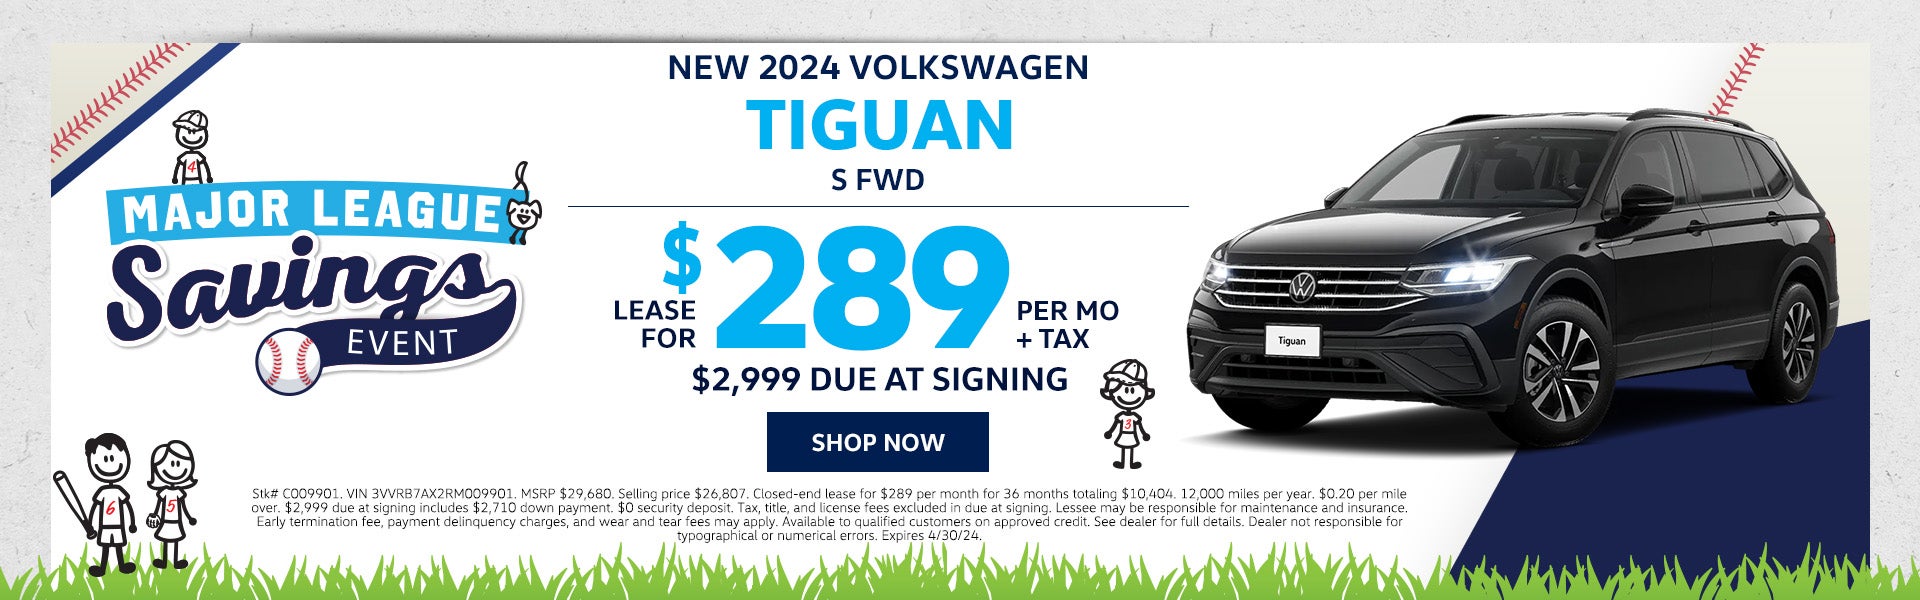 New 2024 VW Tiguan